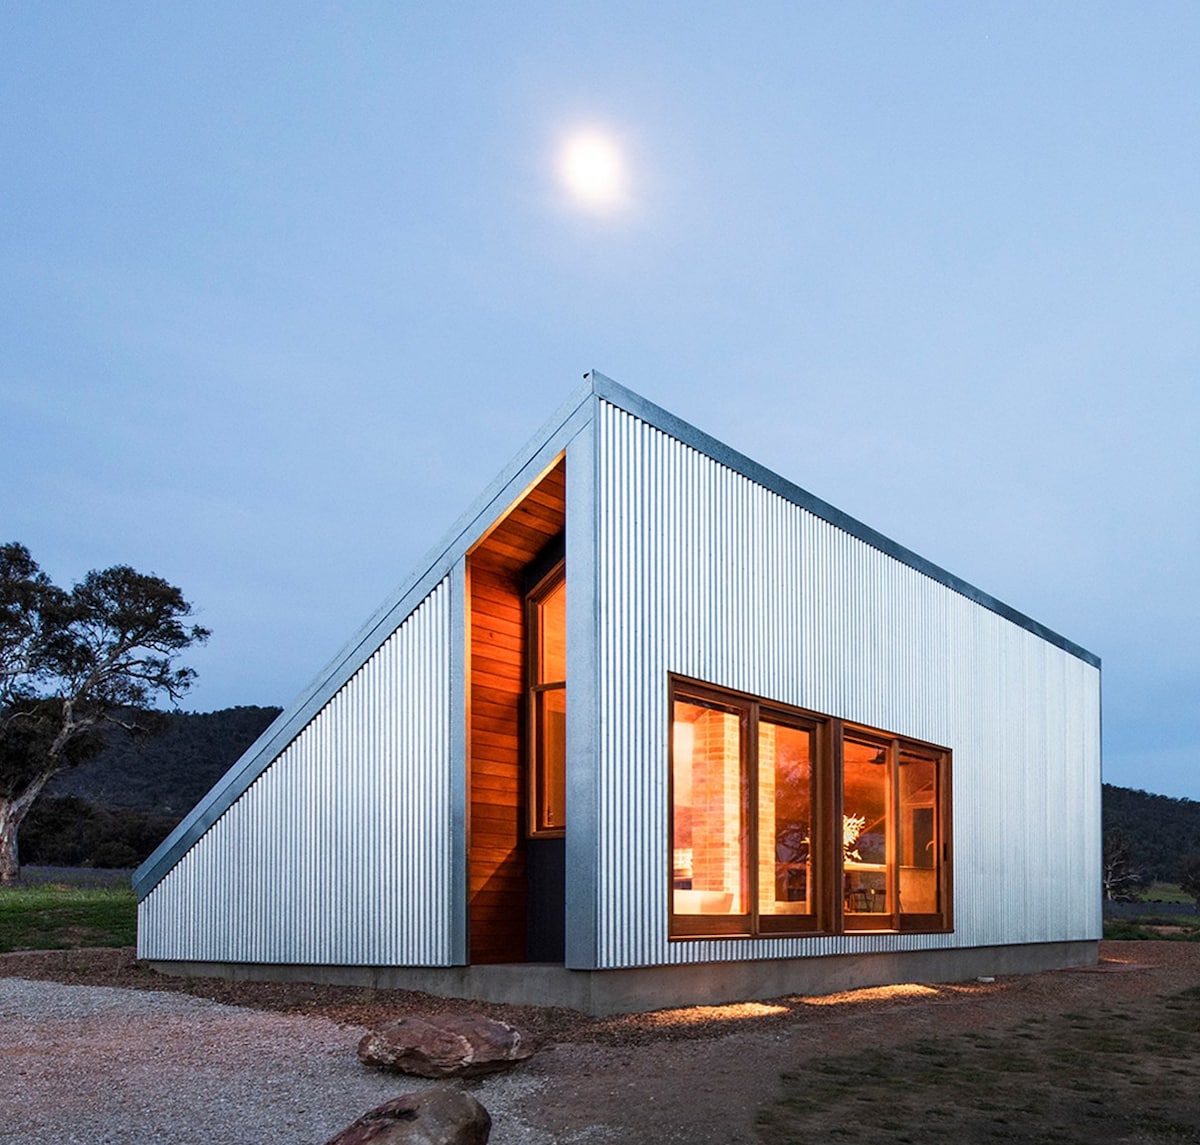 Una casa de Cameron Anderson Architects está situada bajo la luna llena. Las ventanas y la gran puerta abierta muestran un cálido interior de madera, mientras que las ondulaciones de metal corrugado de sus paredes exteriores reflejan la luz de la luna.